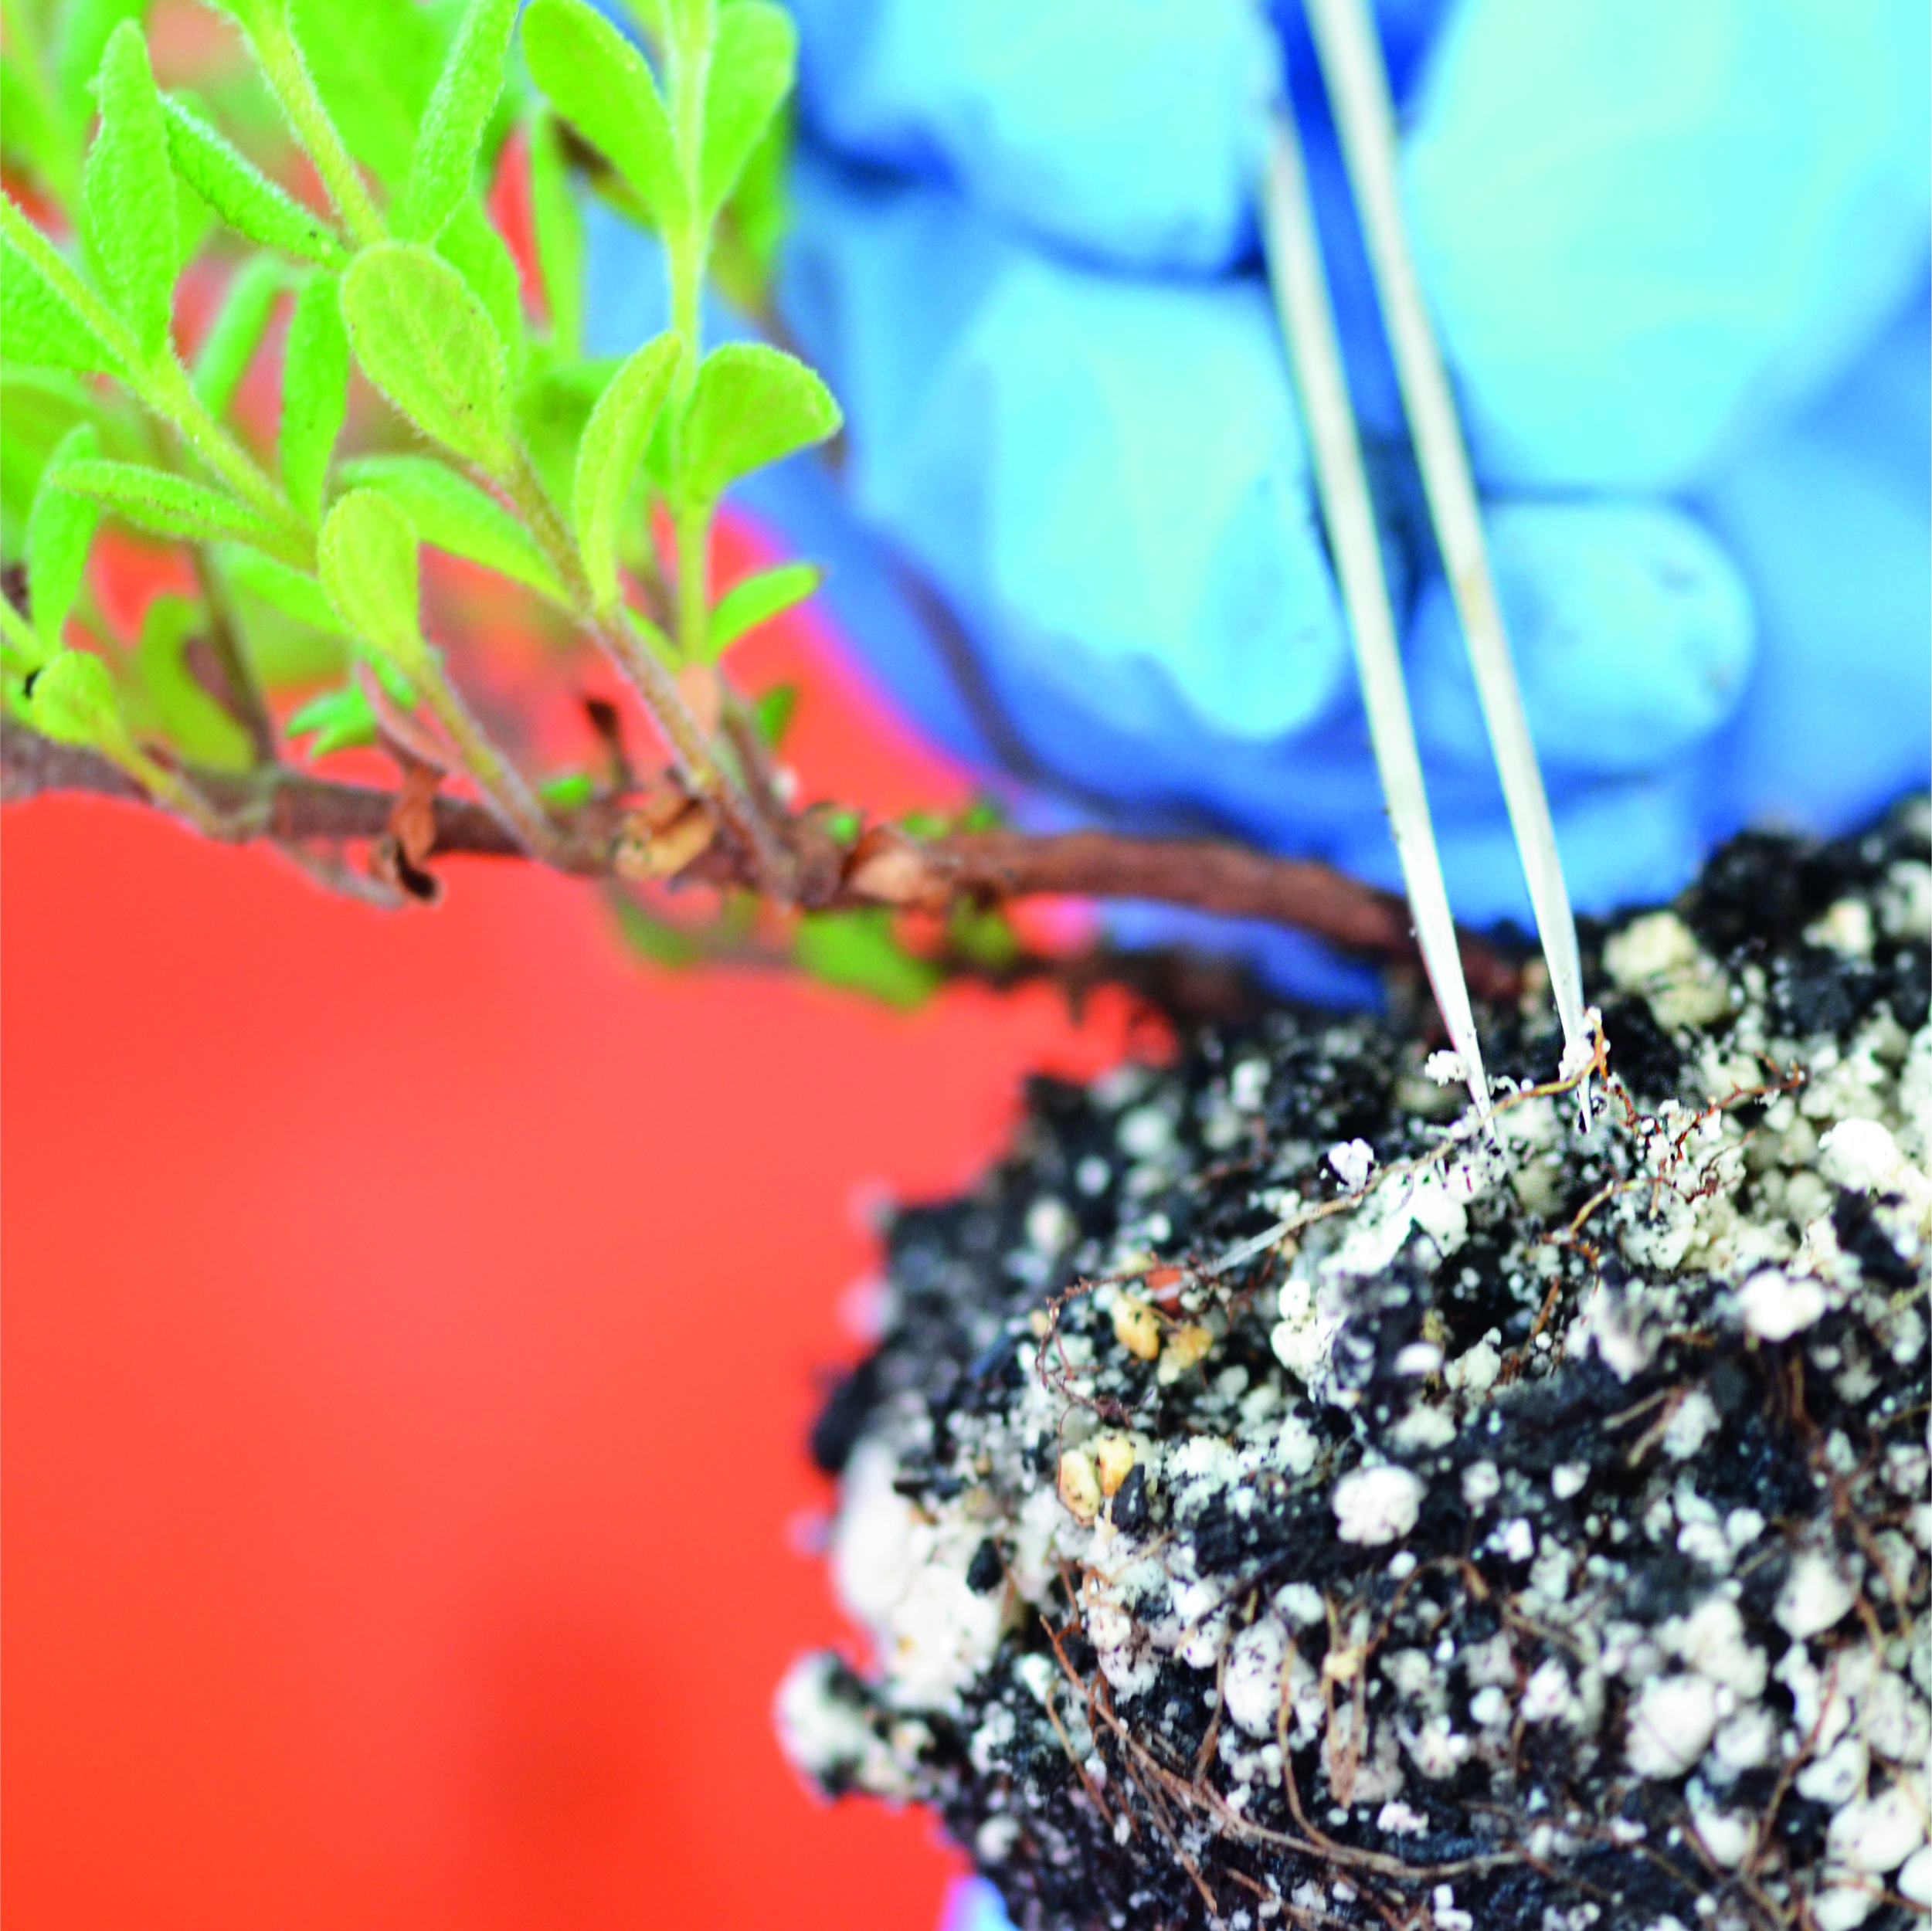 Pormenor da colheita de raízes de Cistus para avaliação da micorrização sob efeito de fitoestrogénios